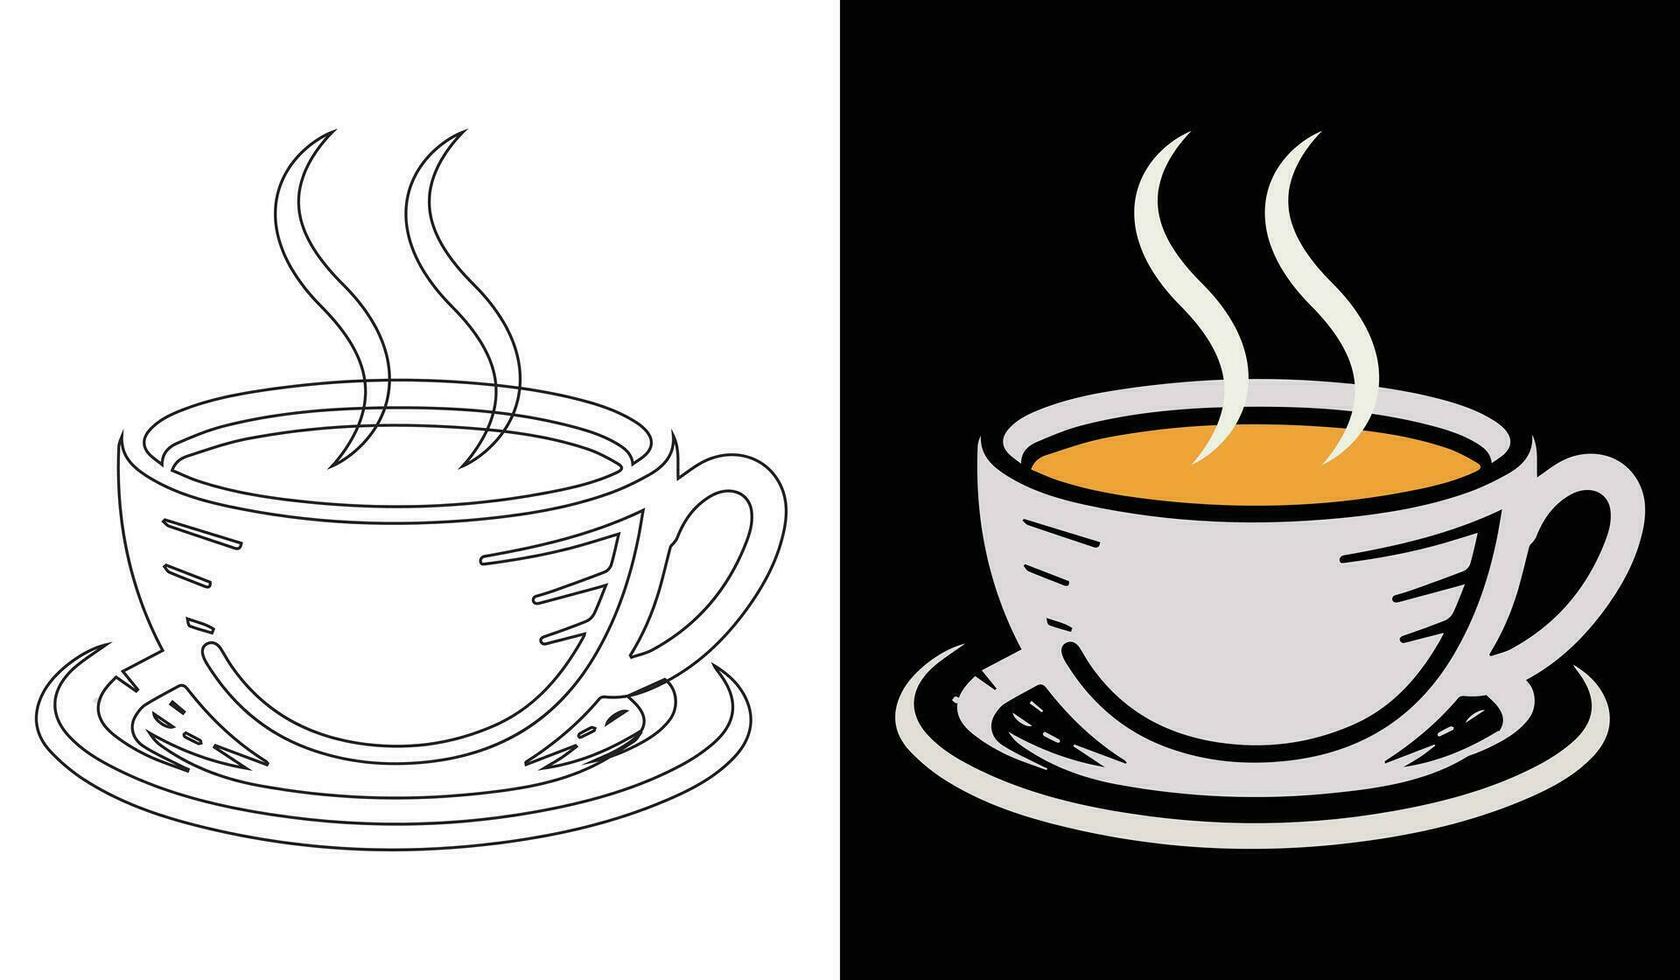 Clásico té y café taza conjunto vector imagen. dibujos animados Clásico taza para té colección con dibujado a mano flores, hojas, y rayas en tazas y tazas para un Inglés tarde té ceremonia fiesta o desalmuerzo.